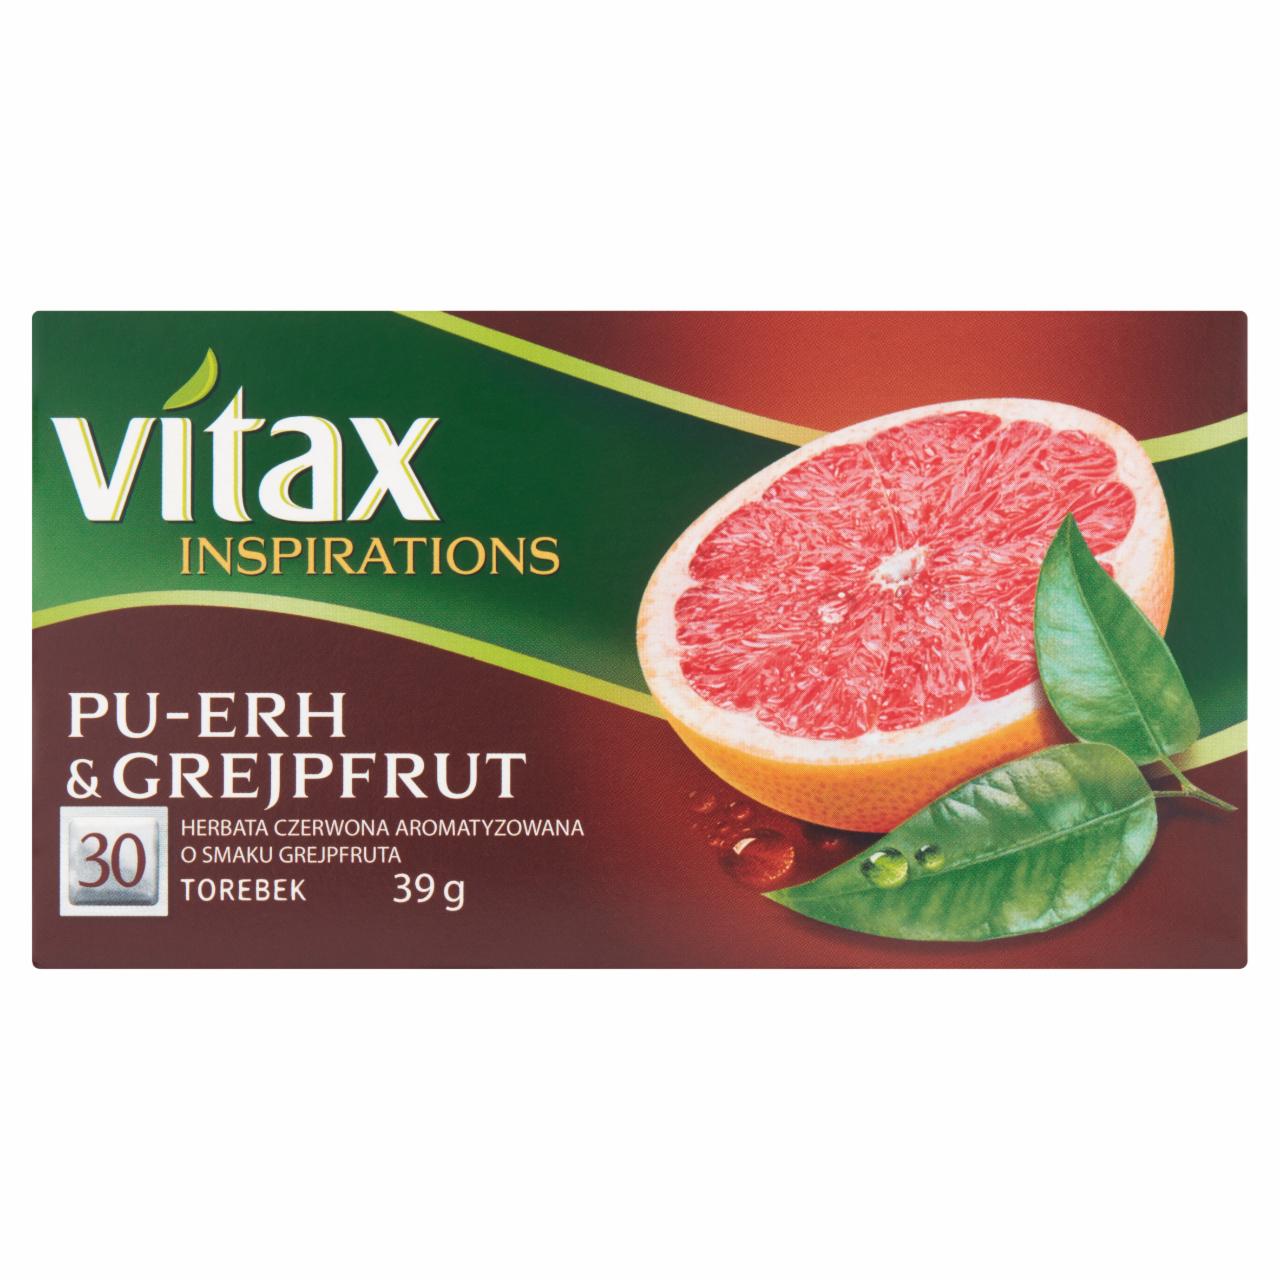 Zdjęcia - Vitax Inspirations Herbata czerwona aromatyzowana Pu-erh & grejpfrut 39 g (30 x 1,3 g)